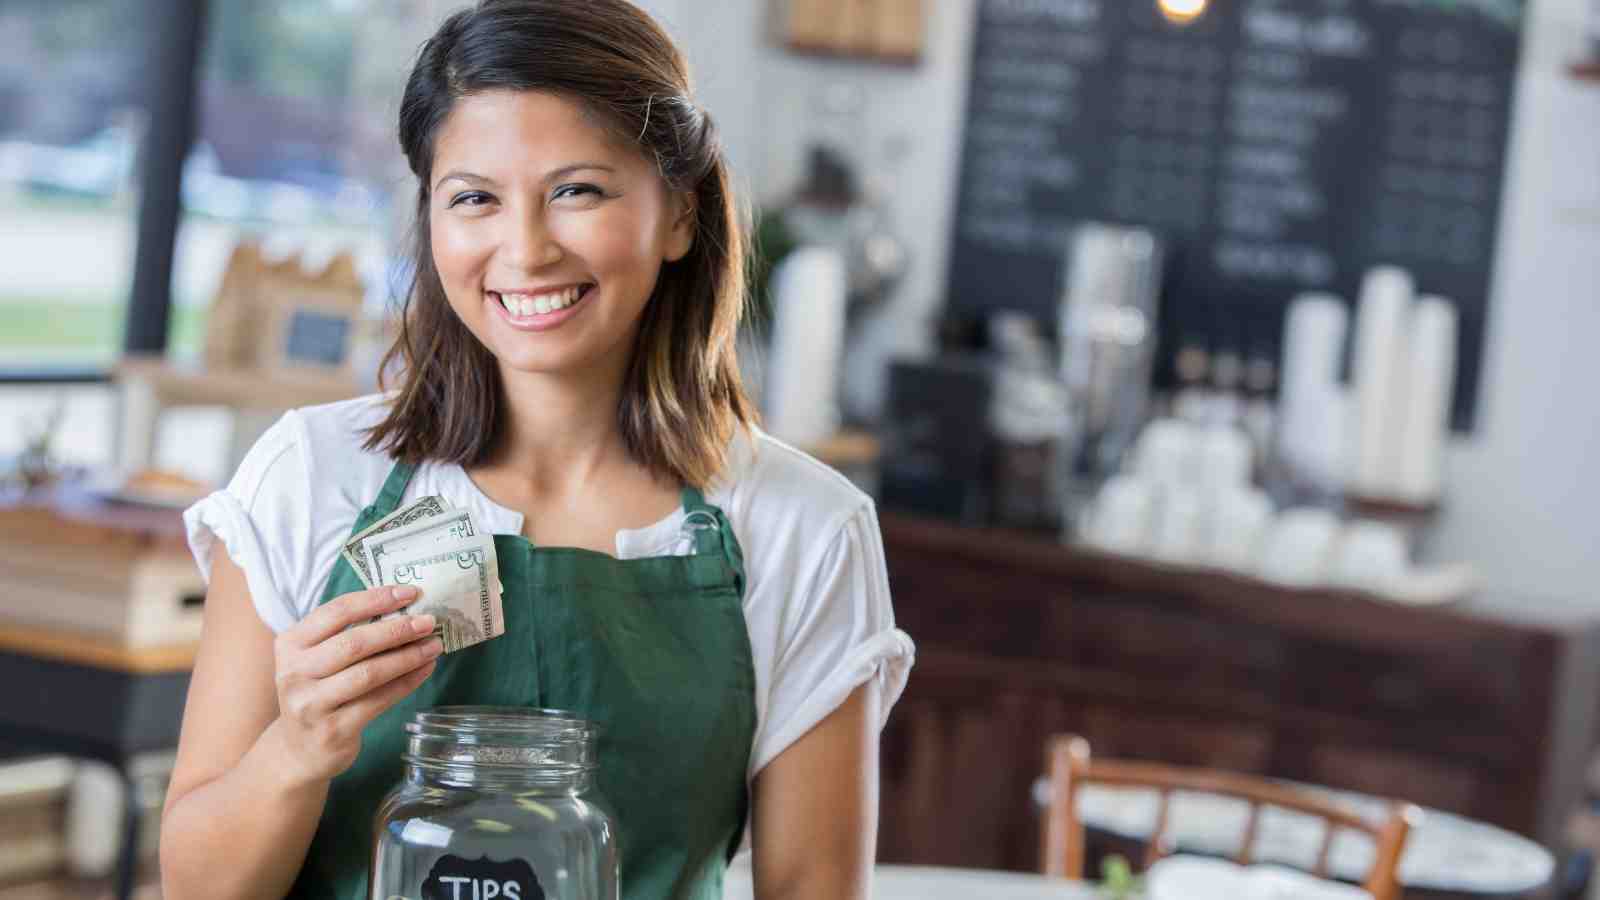 Waitress with tip jar